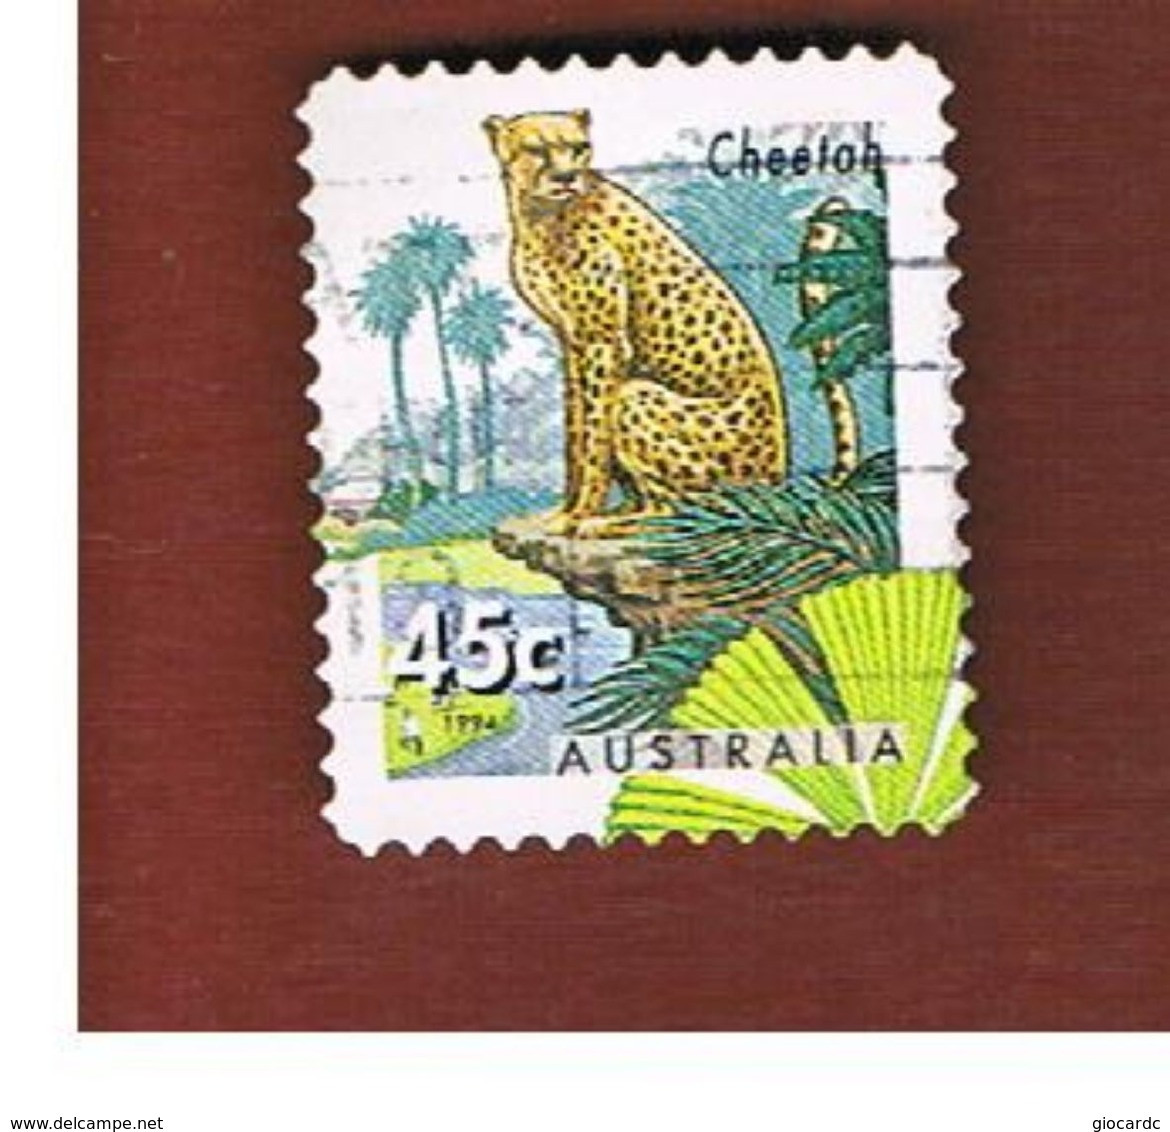 AUSTRALIA  -  SG 1486  -      1994  ANIMALS: CHEETAH   -       USED - Gebruikt